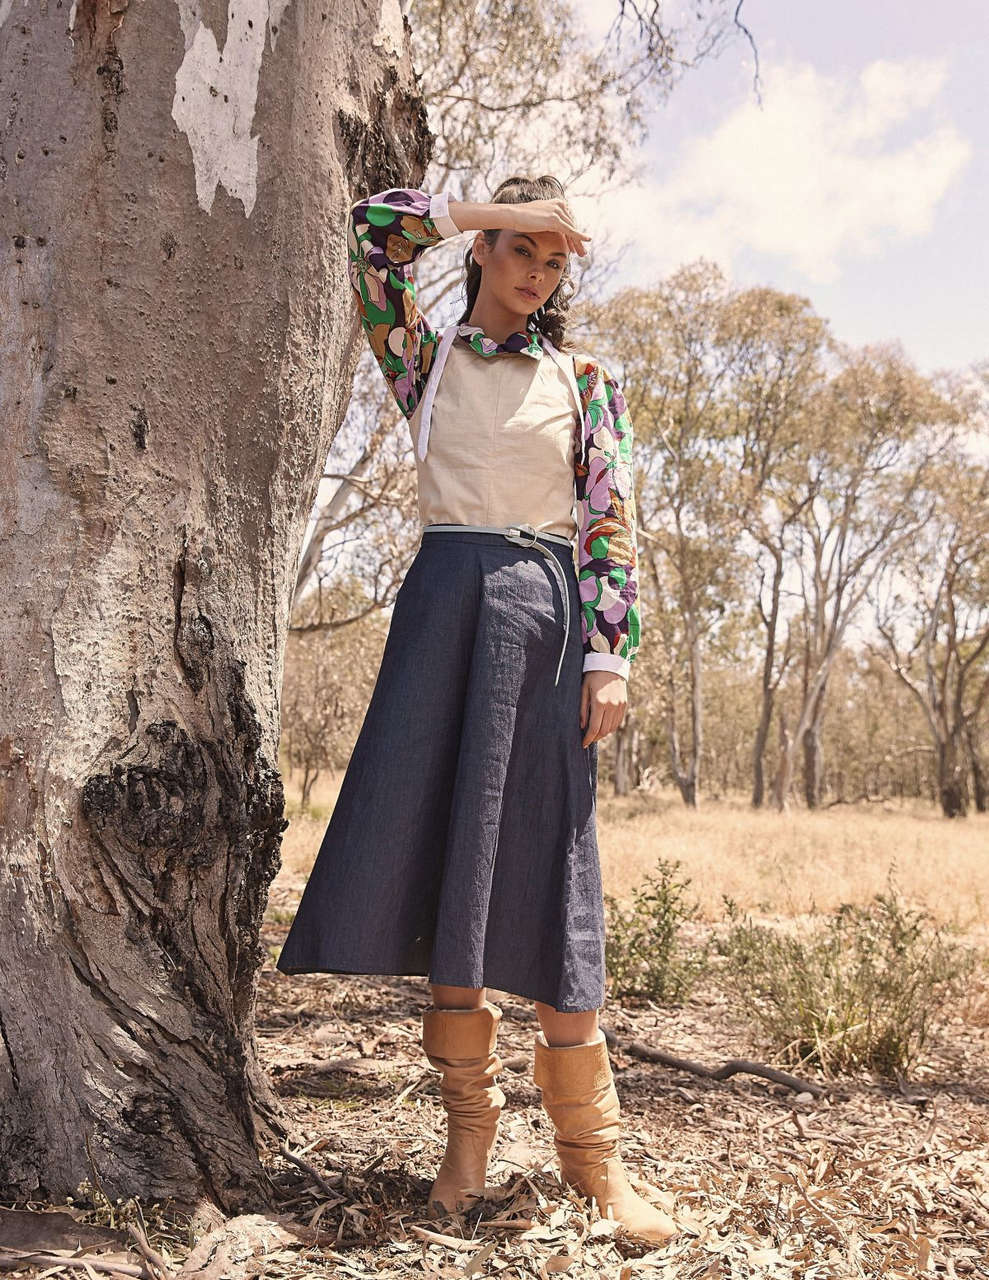 Meika Woollard For Pump Fashion Magazine June